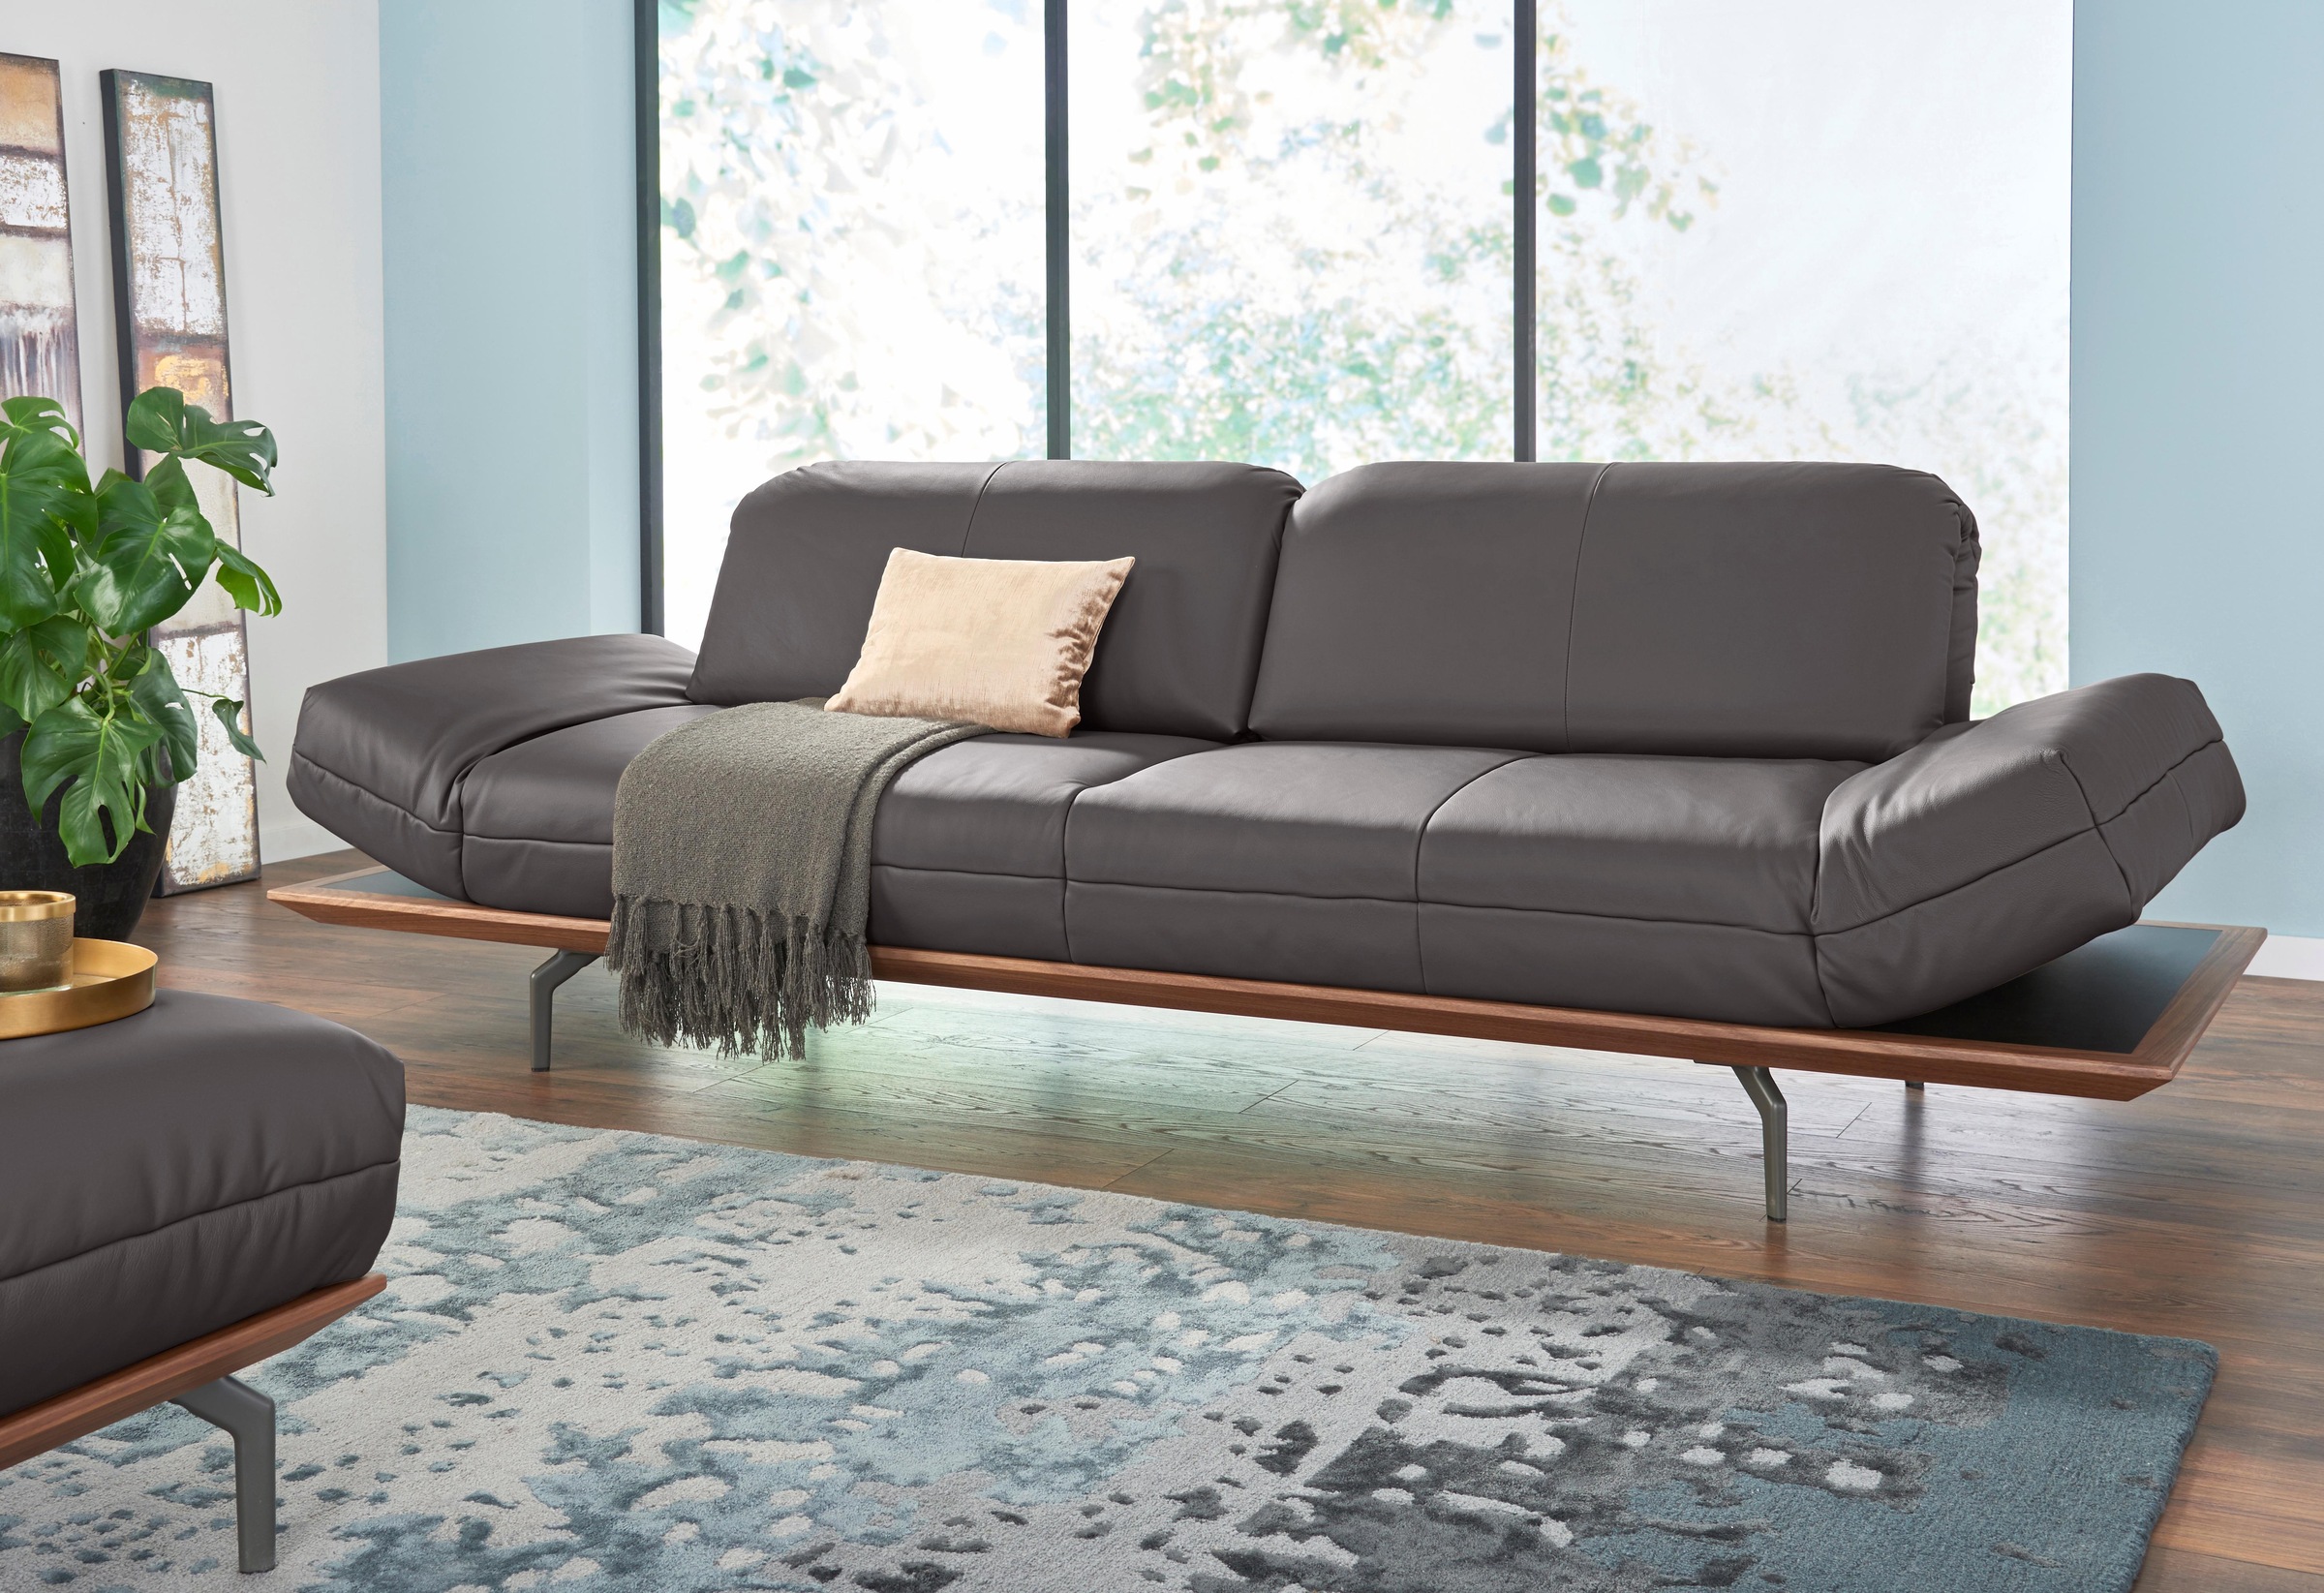 sofa 2 | Eiche Braun Ladendirekt in Nußbaum, 3-Sitzer Natur Qualitäten, Farbe hs.420, Preisvergleich oder in cm, für BxHxT Holzrahmen in 232x129x117 der hülsta